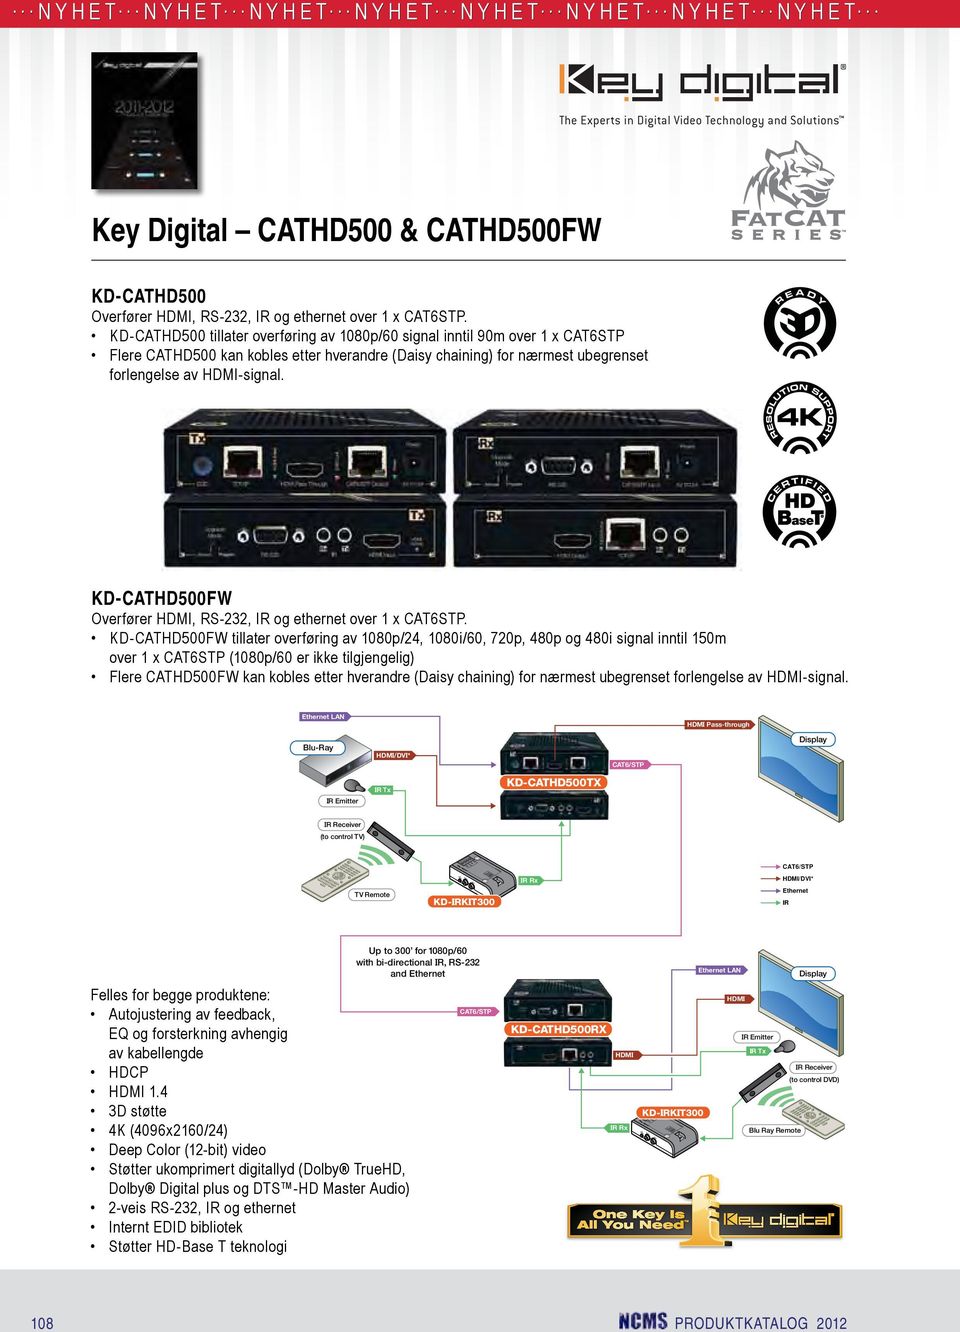 KD-CATHD500FW Overfører, RS-232, og ethernet over 1 x CAT6STP.